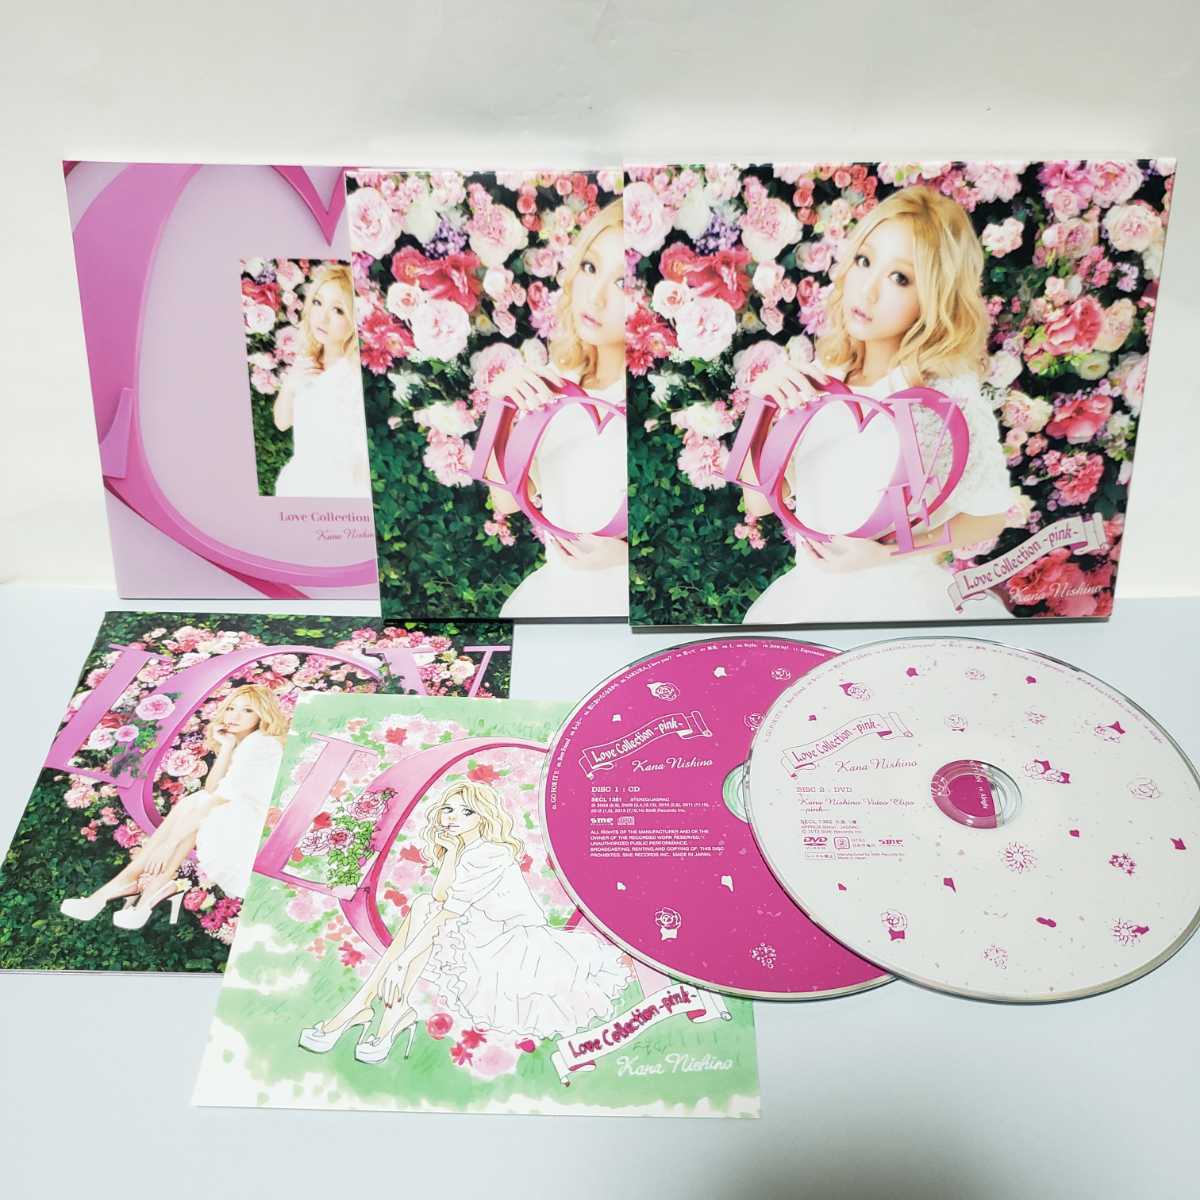 即決価格 西野カナ Love collection~pink~ 初回限定盤 DVD付き CD 最低価格の 店内全品対象 中古 アナザージャケット付き